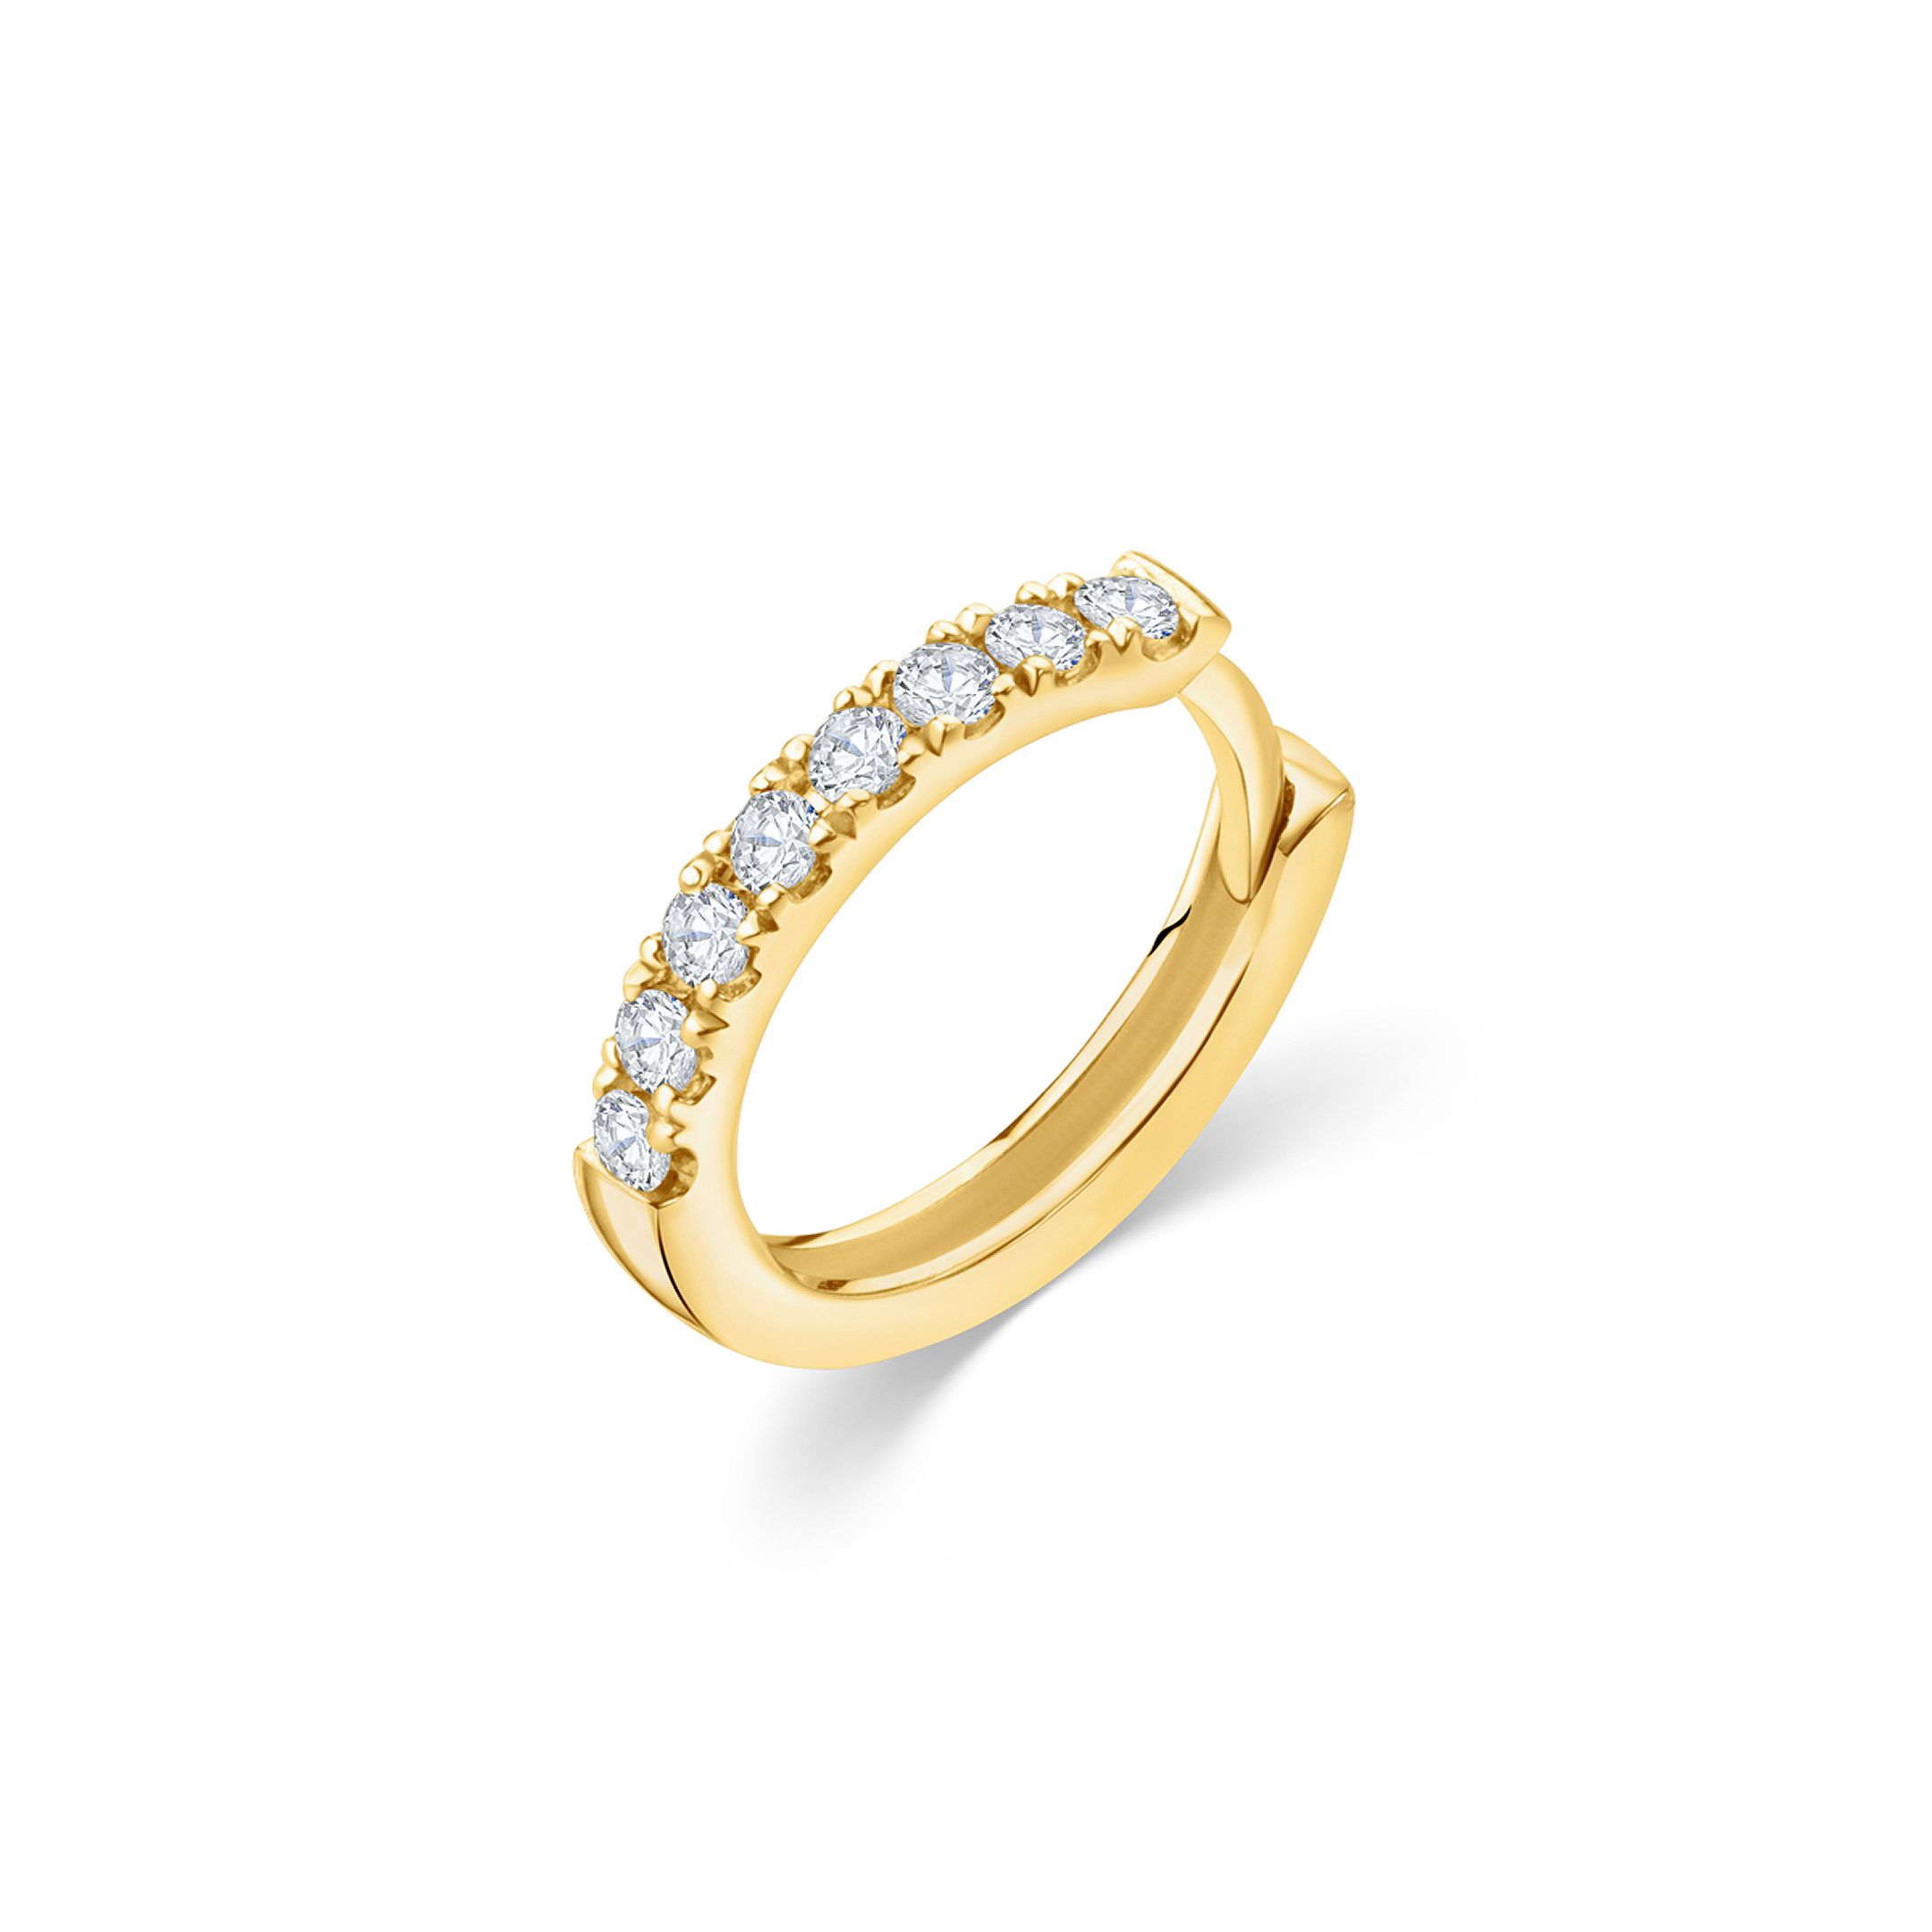 Pendiente Piercing Petite Diamonds Aro en Oro Amarillo de 18 Kt